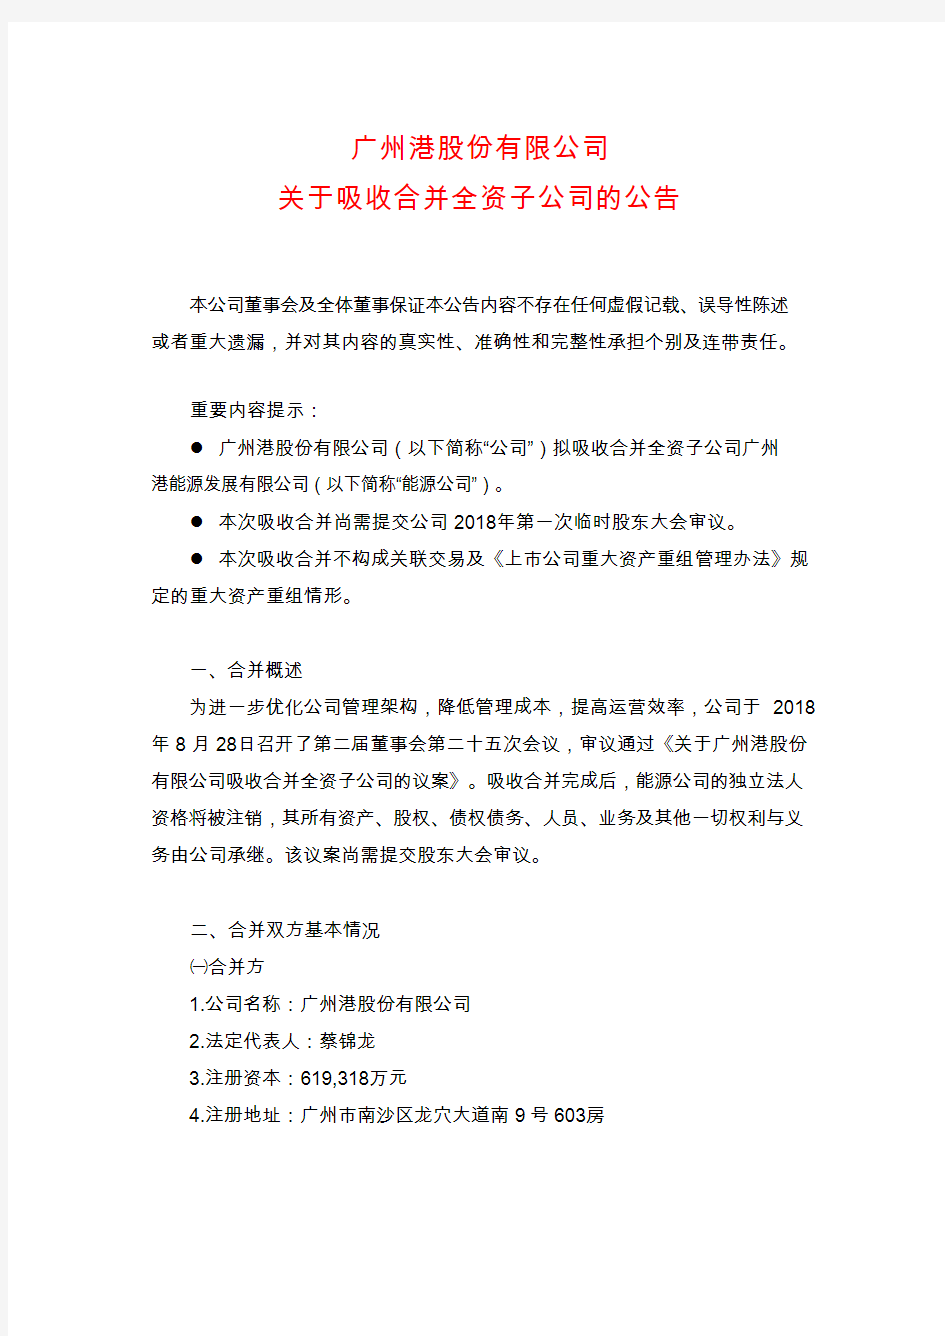 广州港：关于吸收合并全资子公司的公告